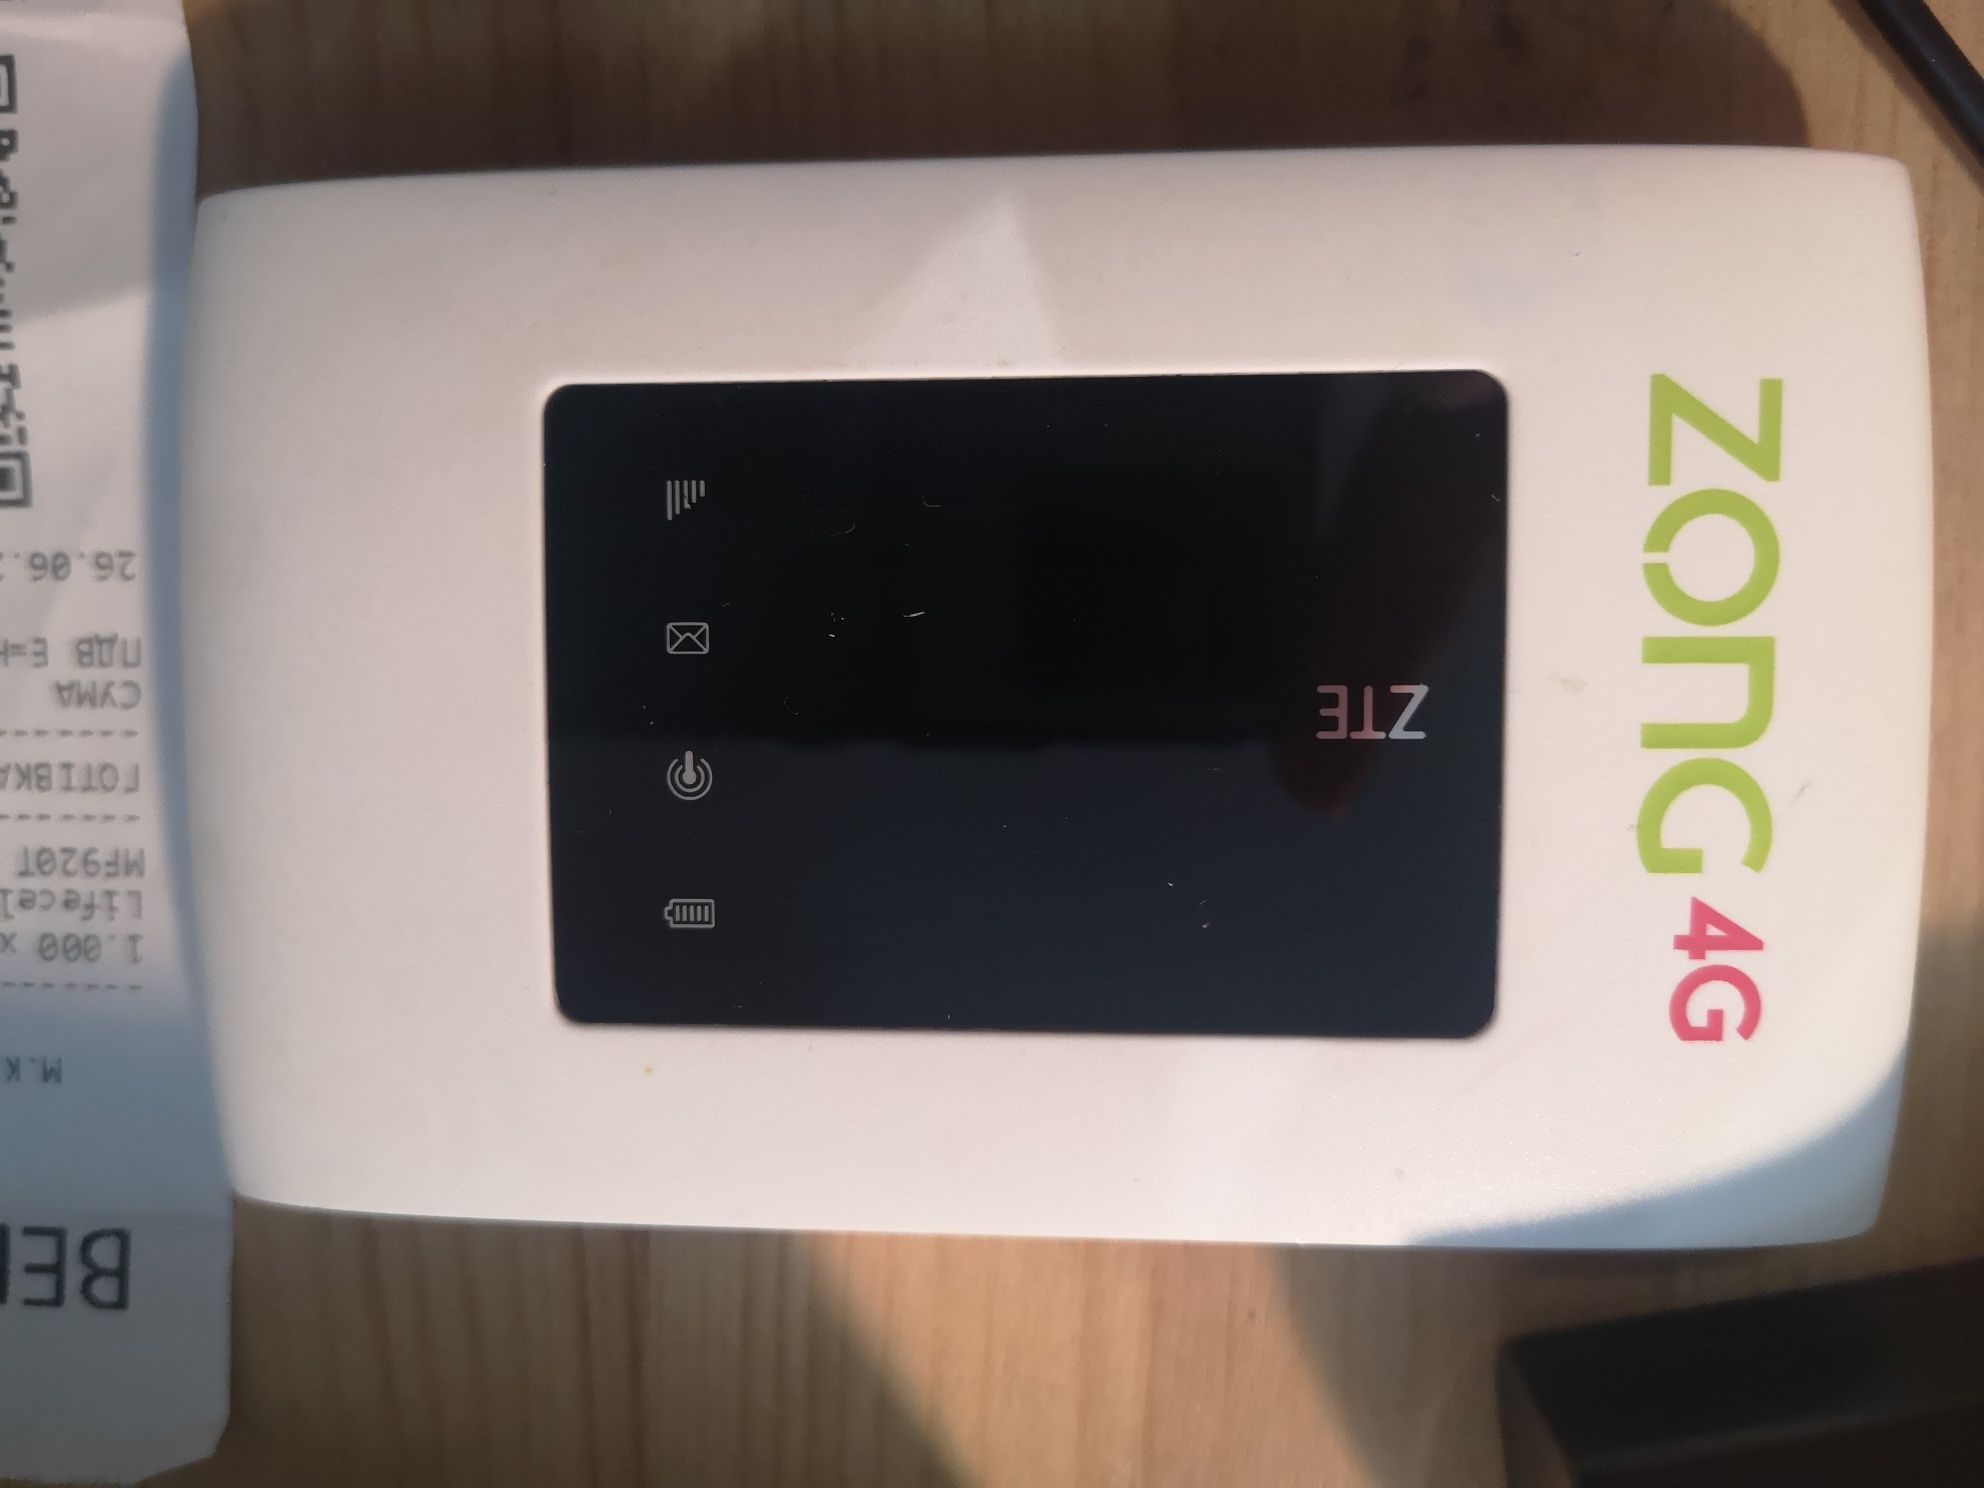 Продам мобильный Wi-Fi 4G роутер ZTE